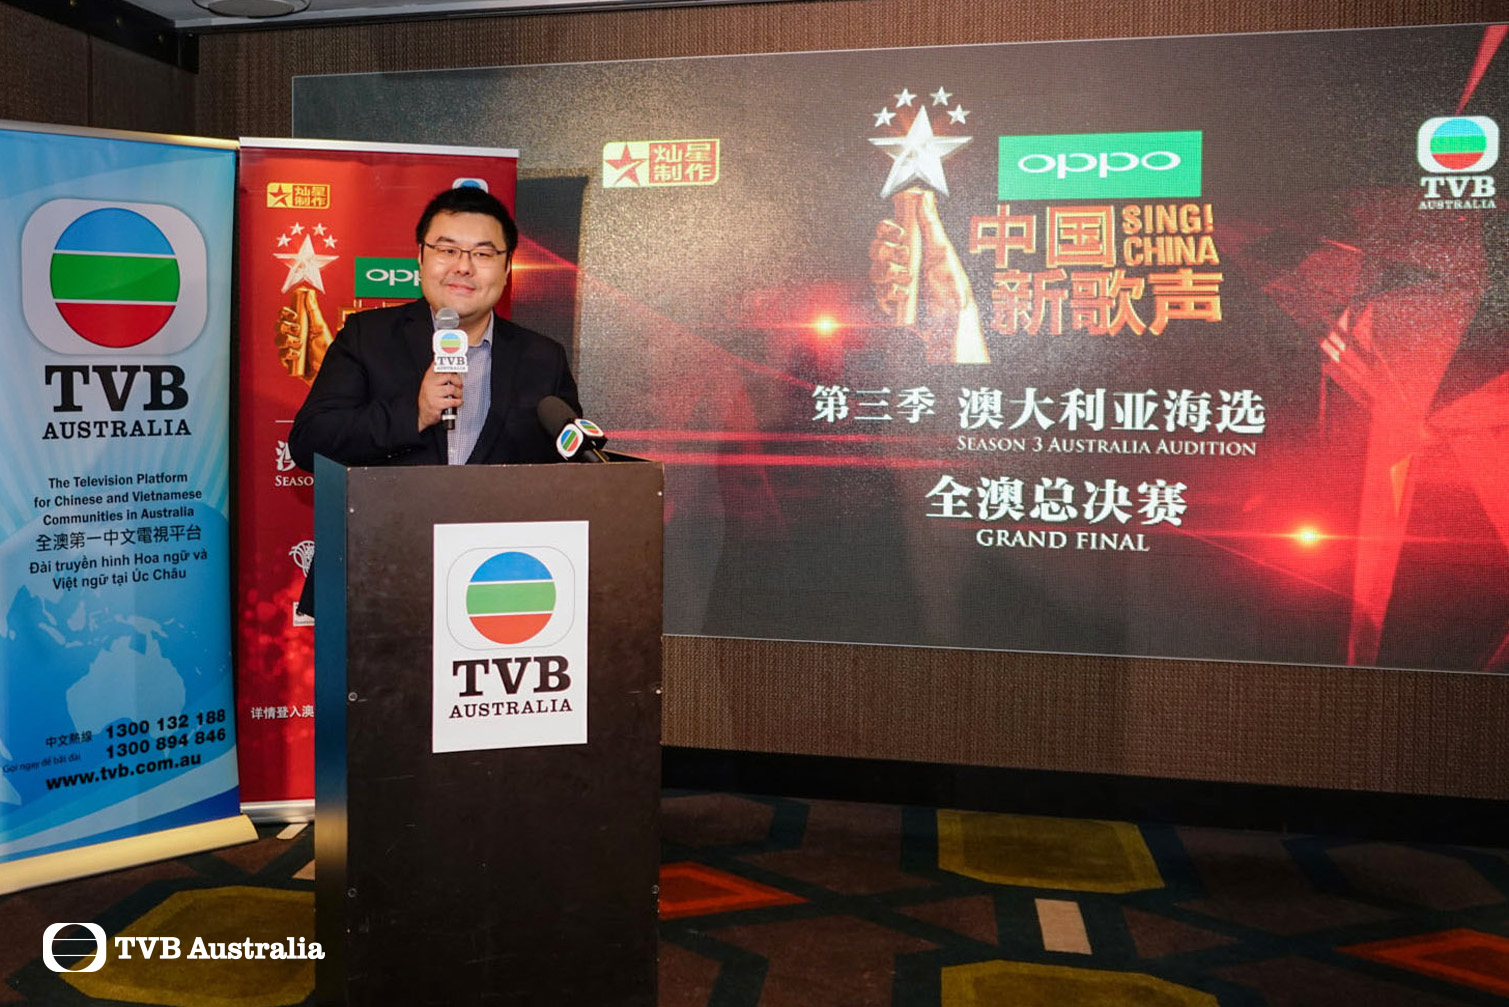 1 澳洲TVB打造全澳代表进军《中国新歌声》